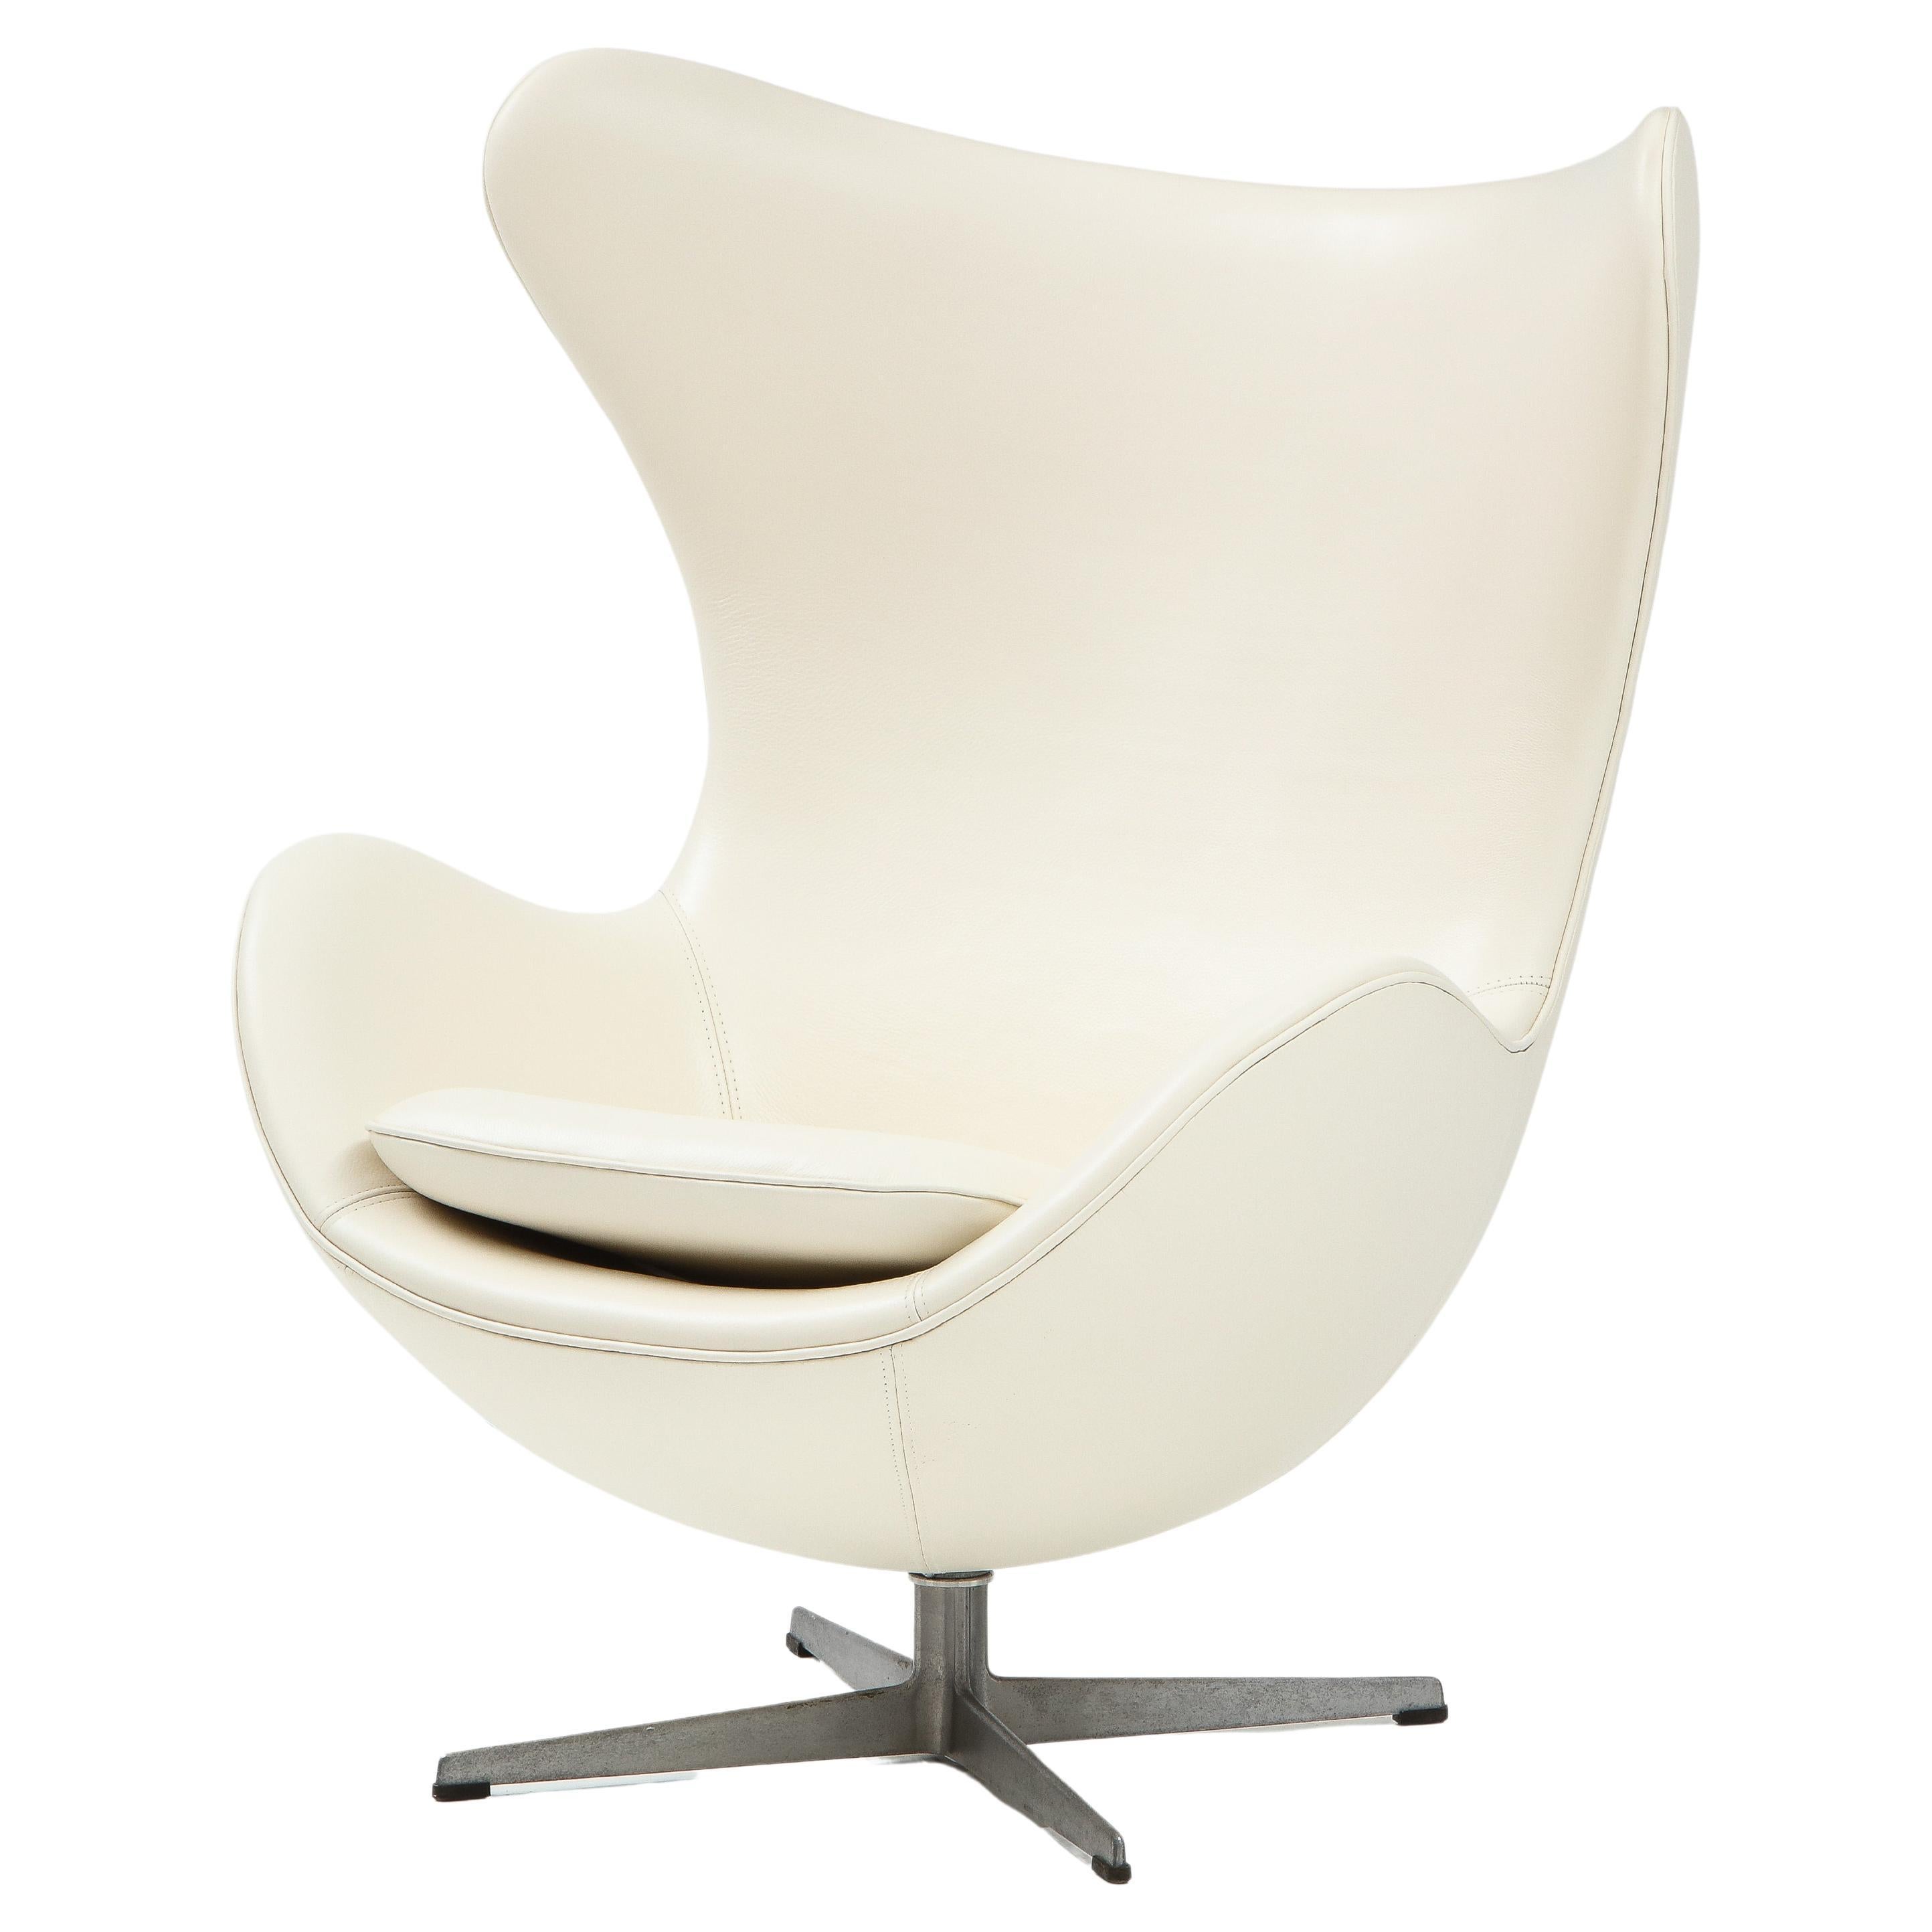 Arne Jacobson 'Egg' Chair in White Leather for Fritz Hansen, 1958 